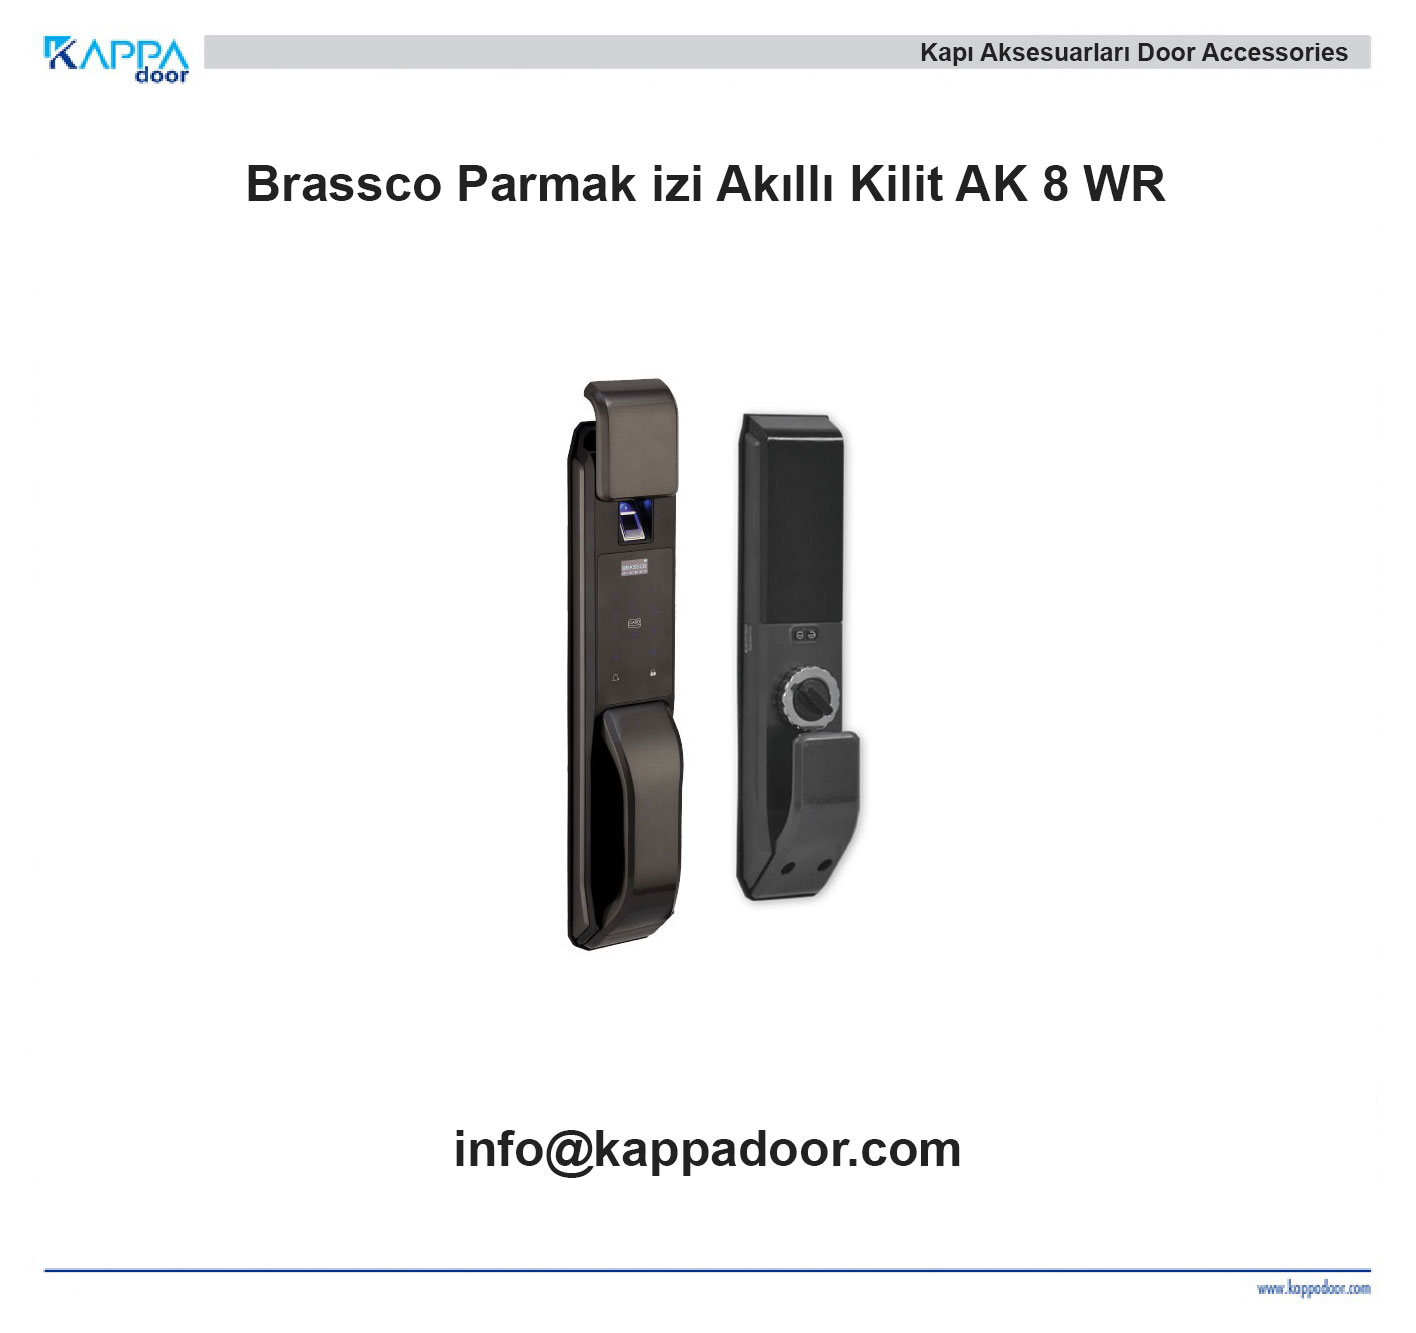 Brassco Parmak izi Akıllı Kilit AK 8 WR